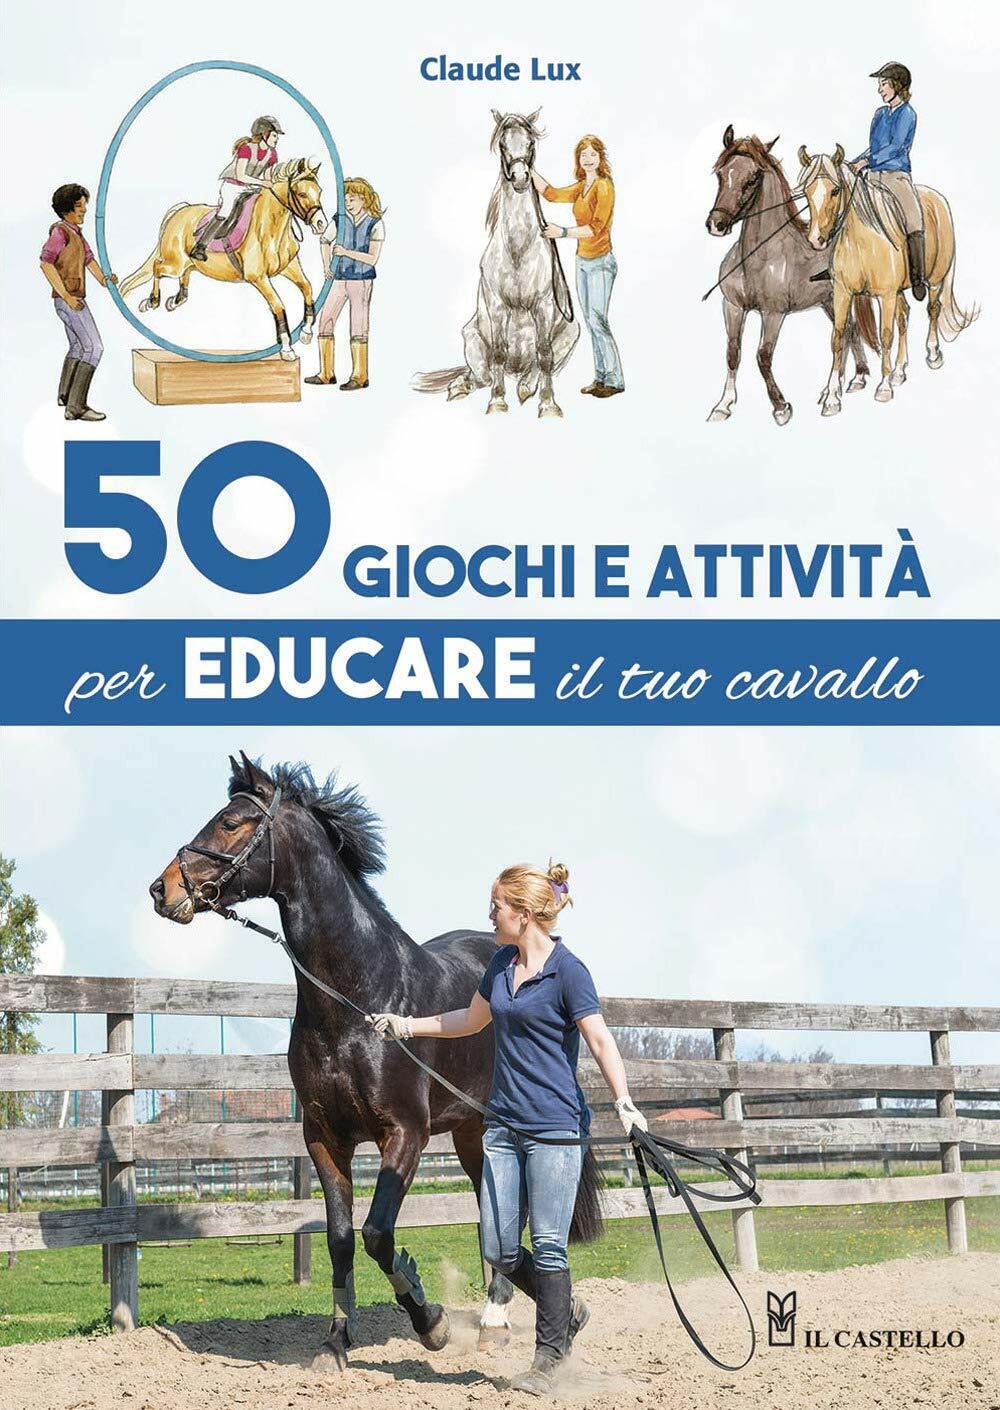 50 giochi e attivit? per educare il tuo cavallo - Claude Lux - Il Castello, 2020